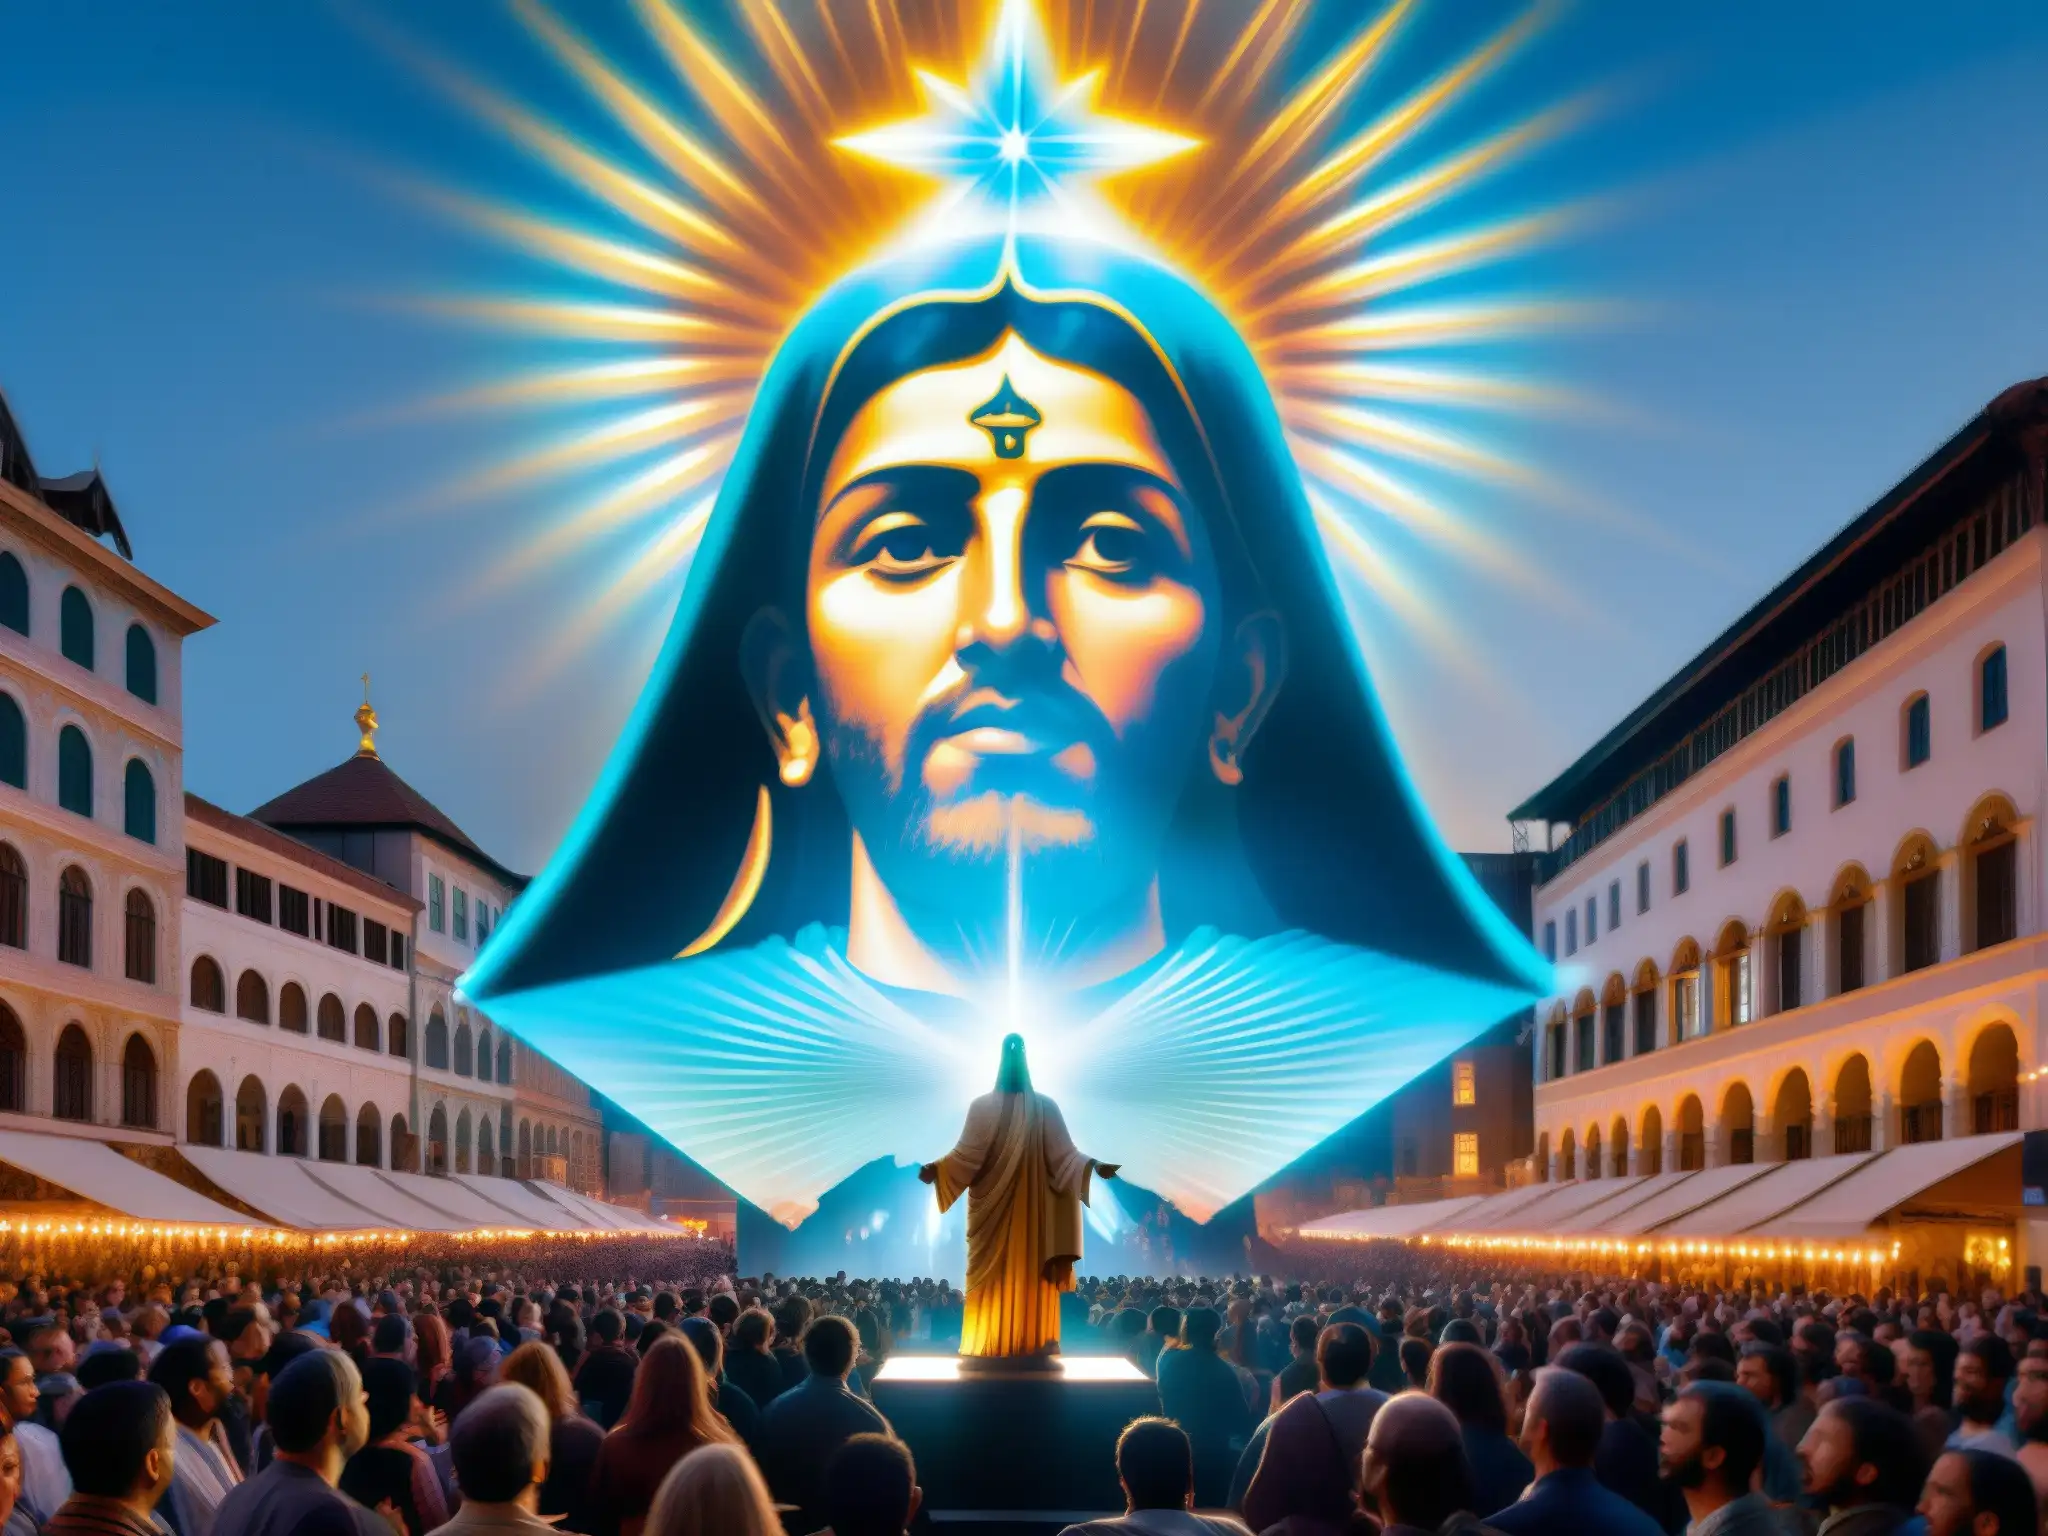 Una impresionante proyección holográfica de una figura religiosa domina la plaza de la ciudad, asombrando y cautivando a los espectadores